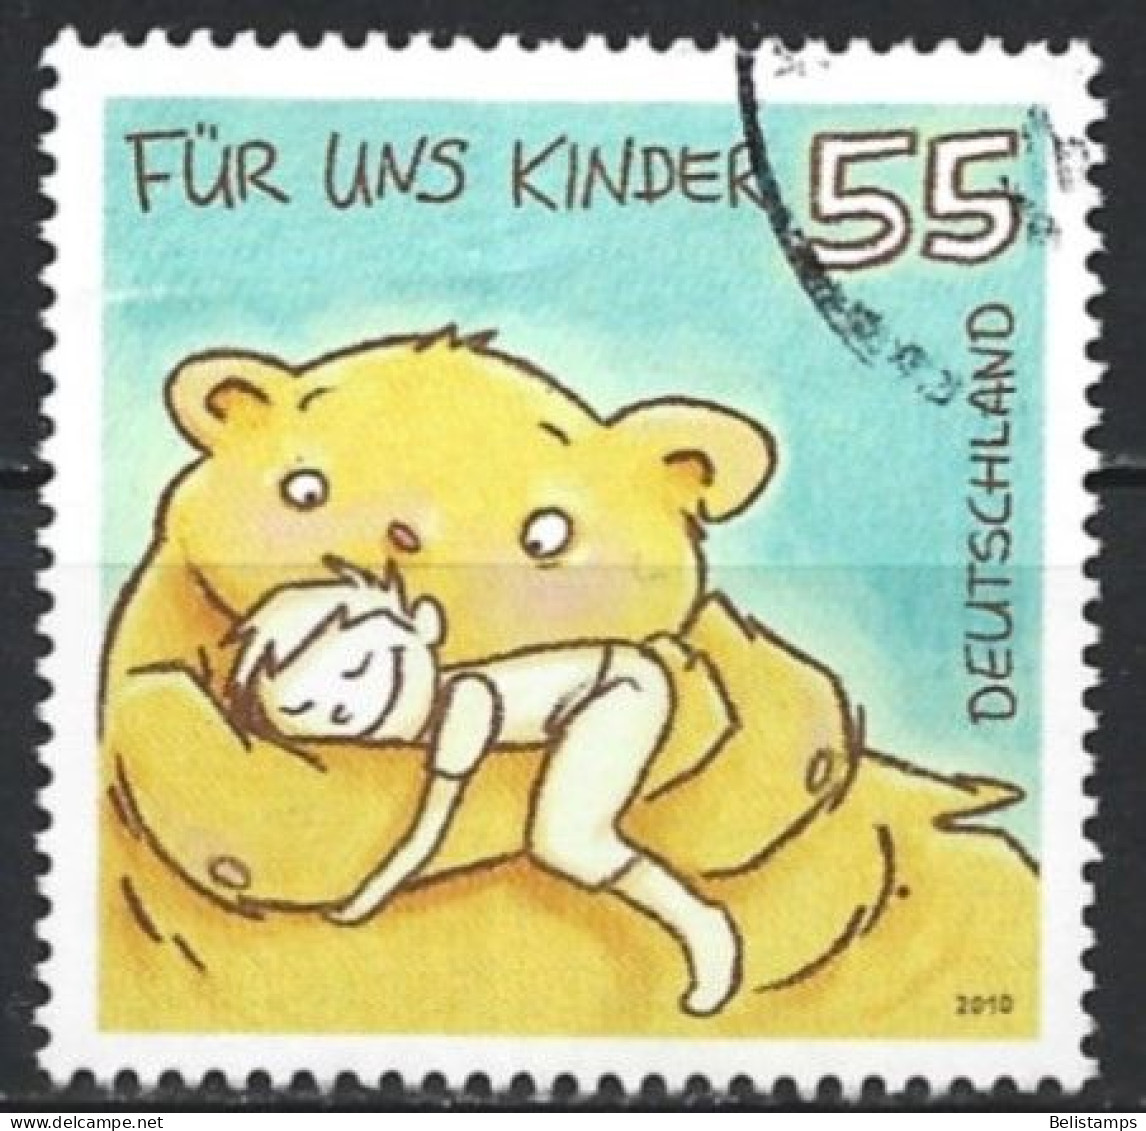 Germany 2010. Scott #2586 (U) For Children (Complete Issue) - Gebraucht